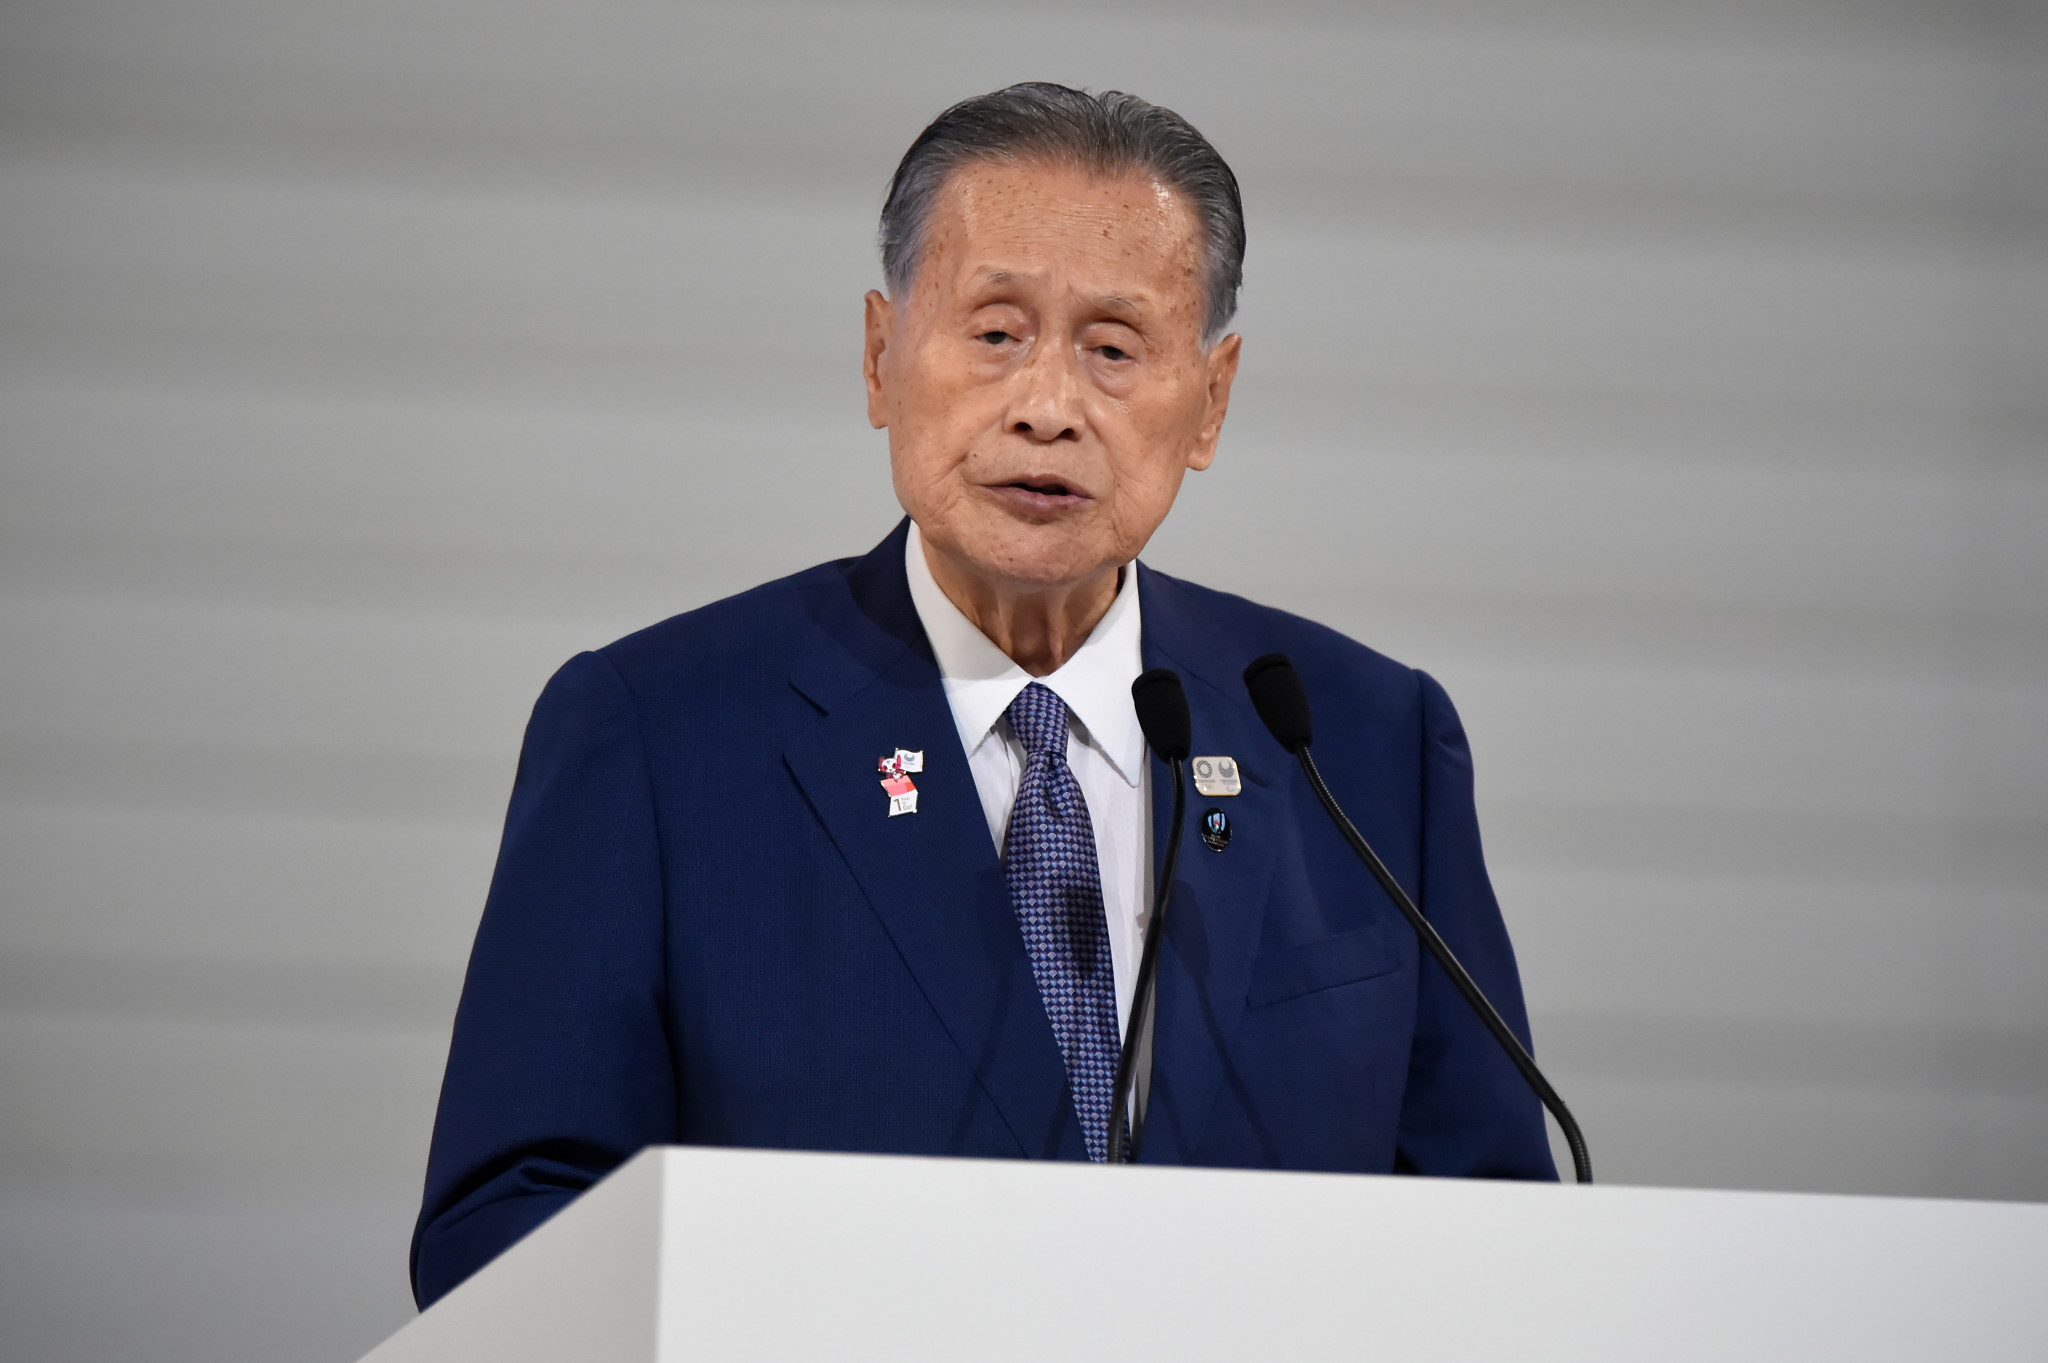 Tokyo 2020 President praying for coronavirus to "vanish" before Olympics